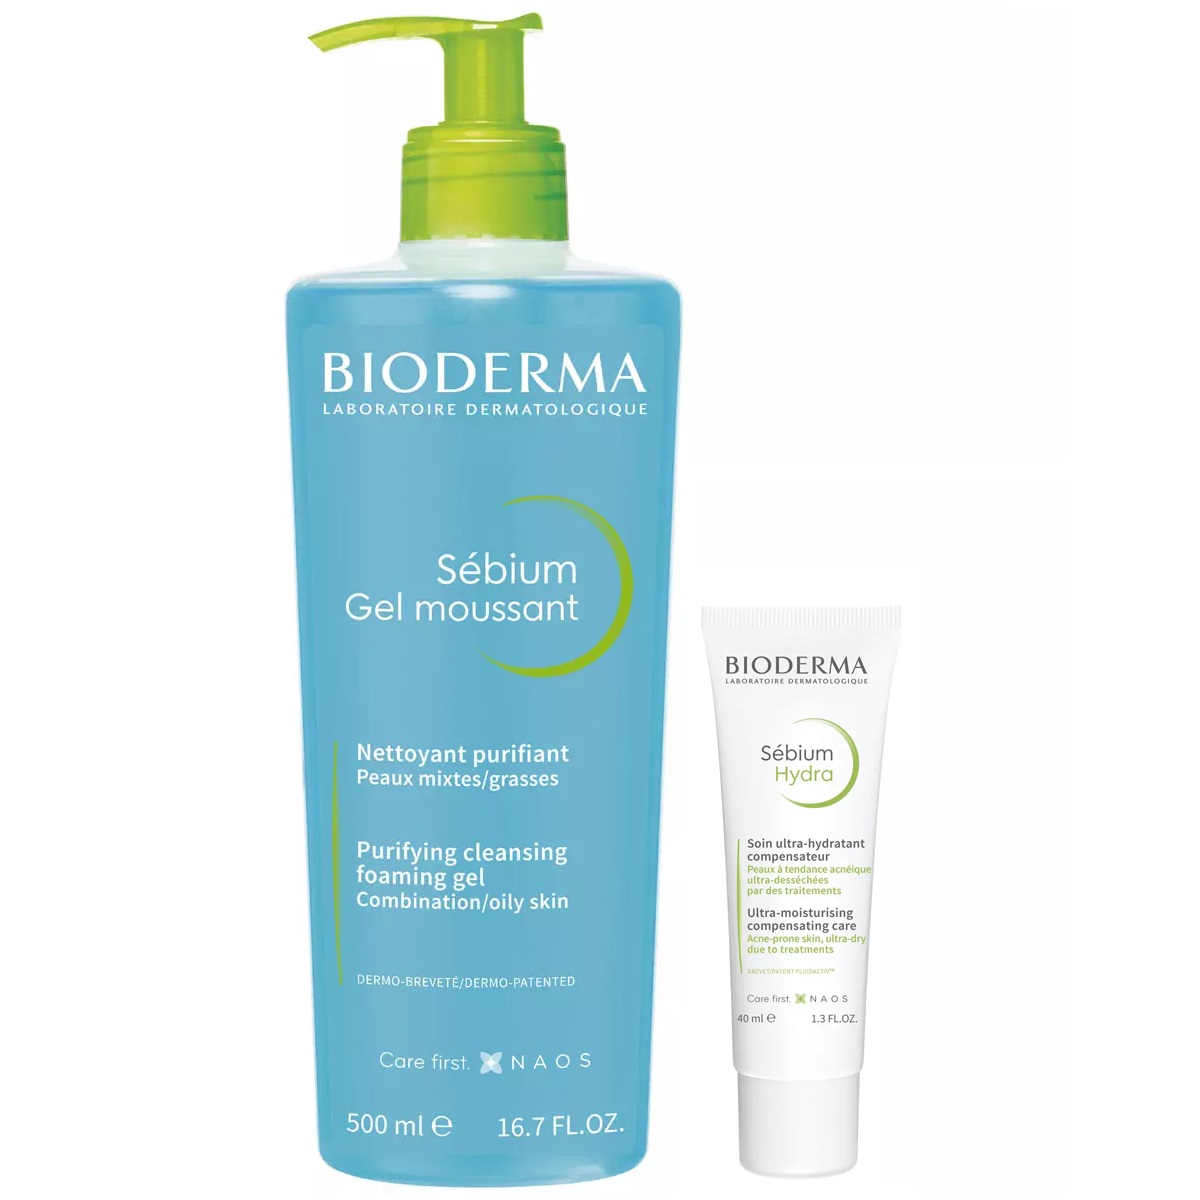 Bioderma Набор для увлажнения жирной кожи: крем, 40 мл + гель, 500 мл (Bioderma, Sebium) bioderma набор для жирной кожи очищающий гель 200 мл крем 40 мл bioderma sebium